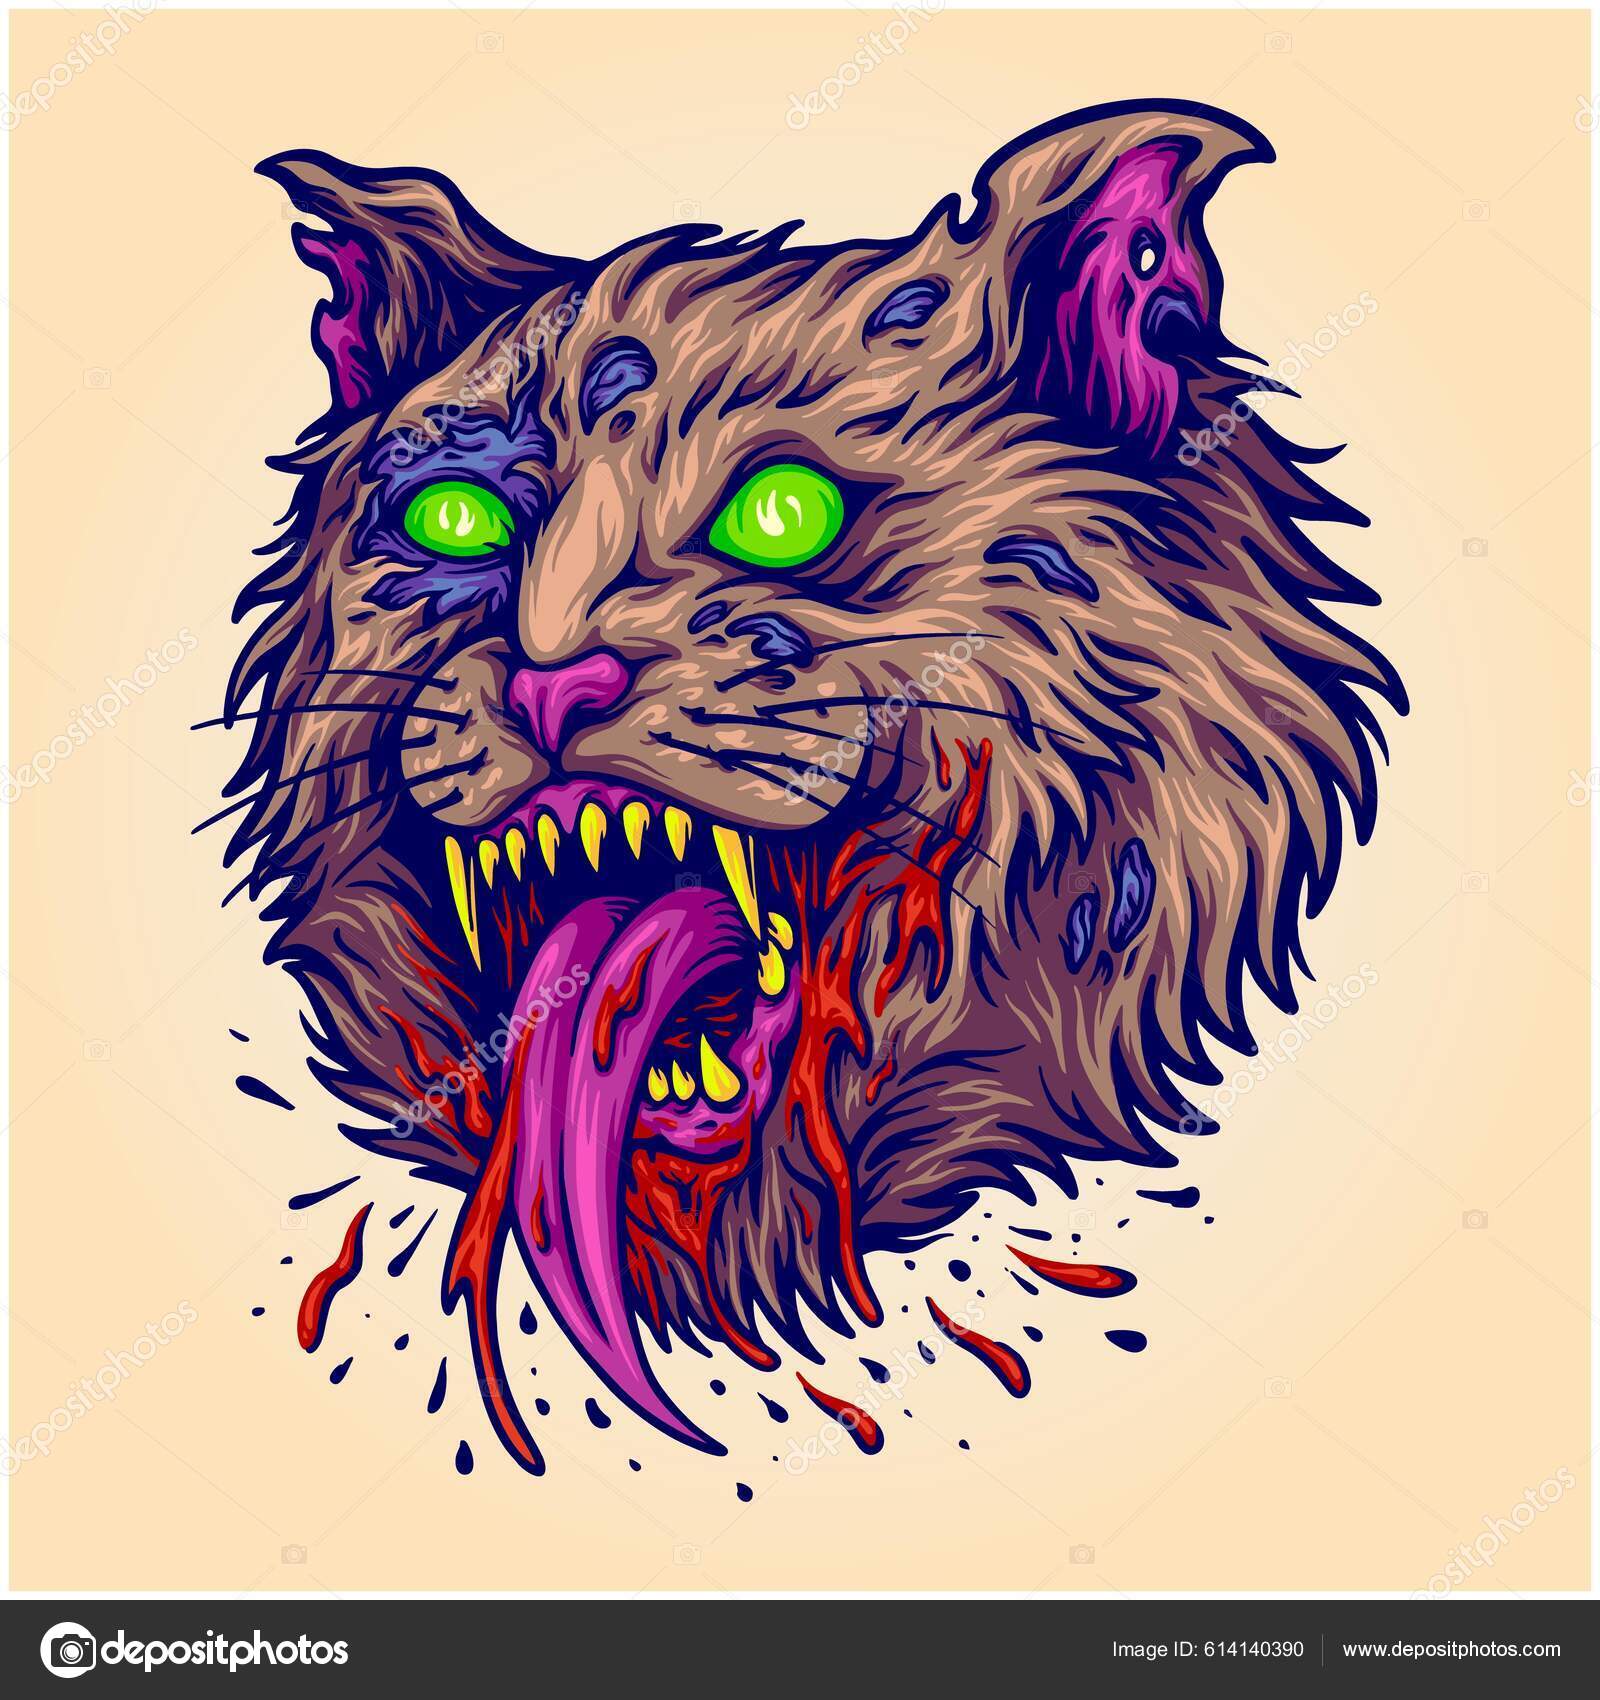 Ilustração Do Vetor Assustador Halloween Desenhos Do Gato-do-mato